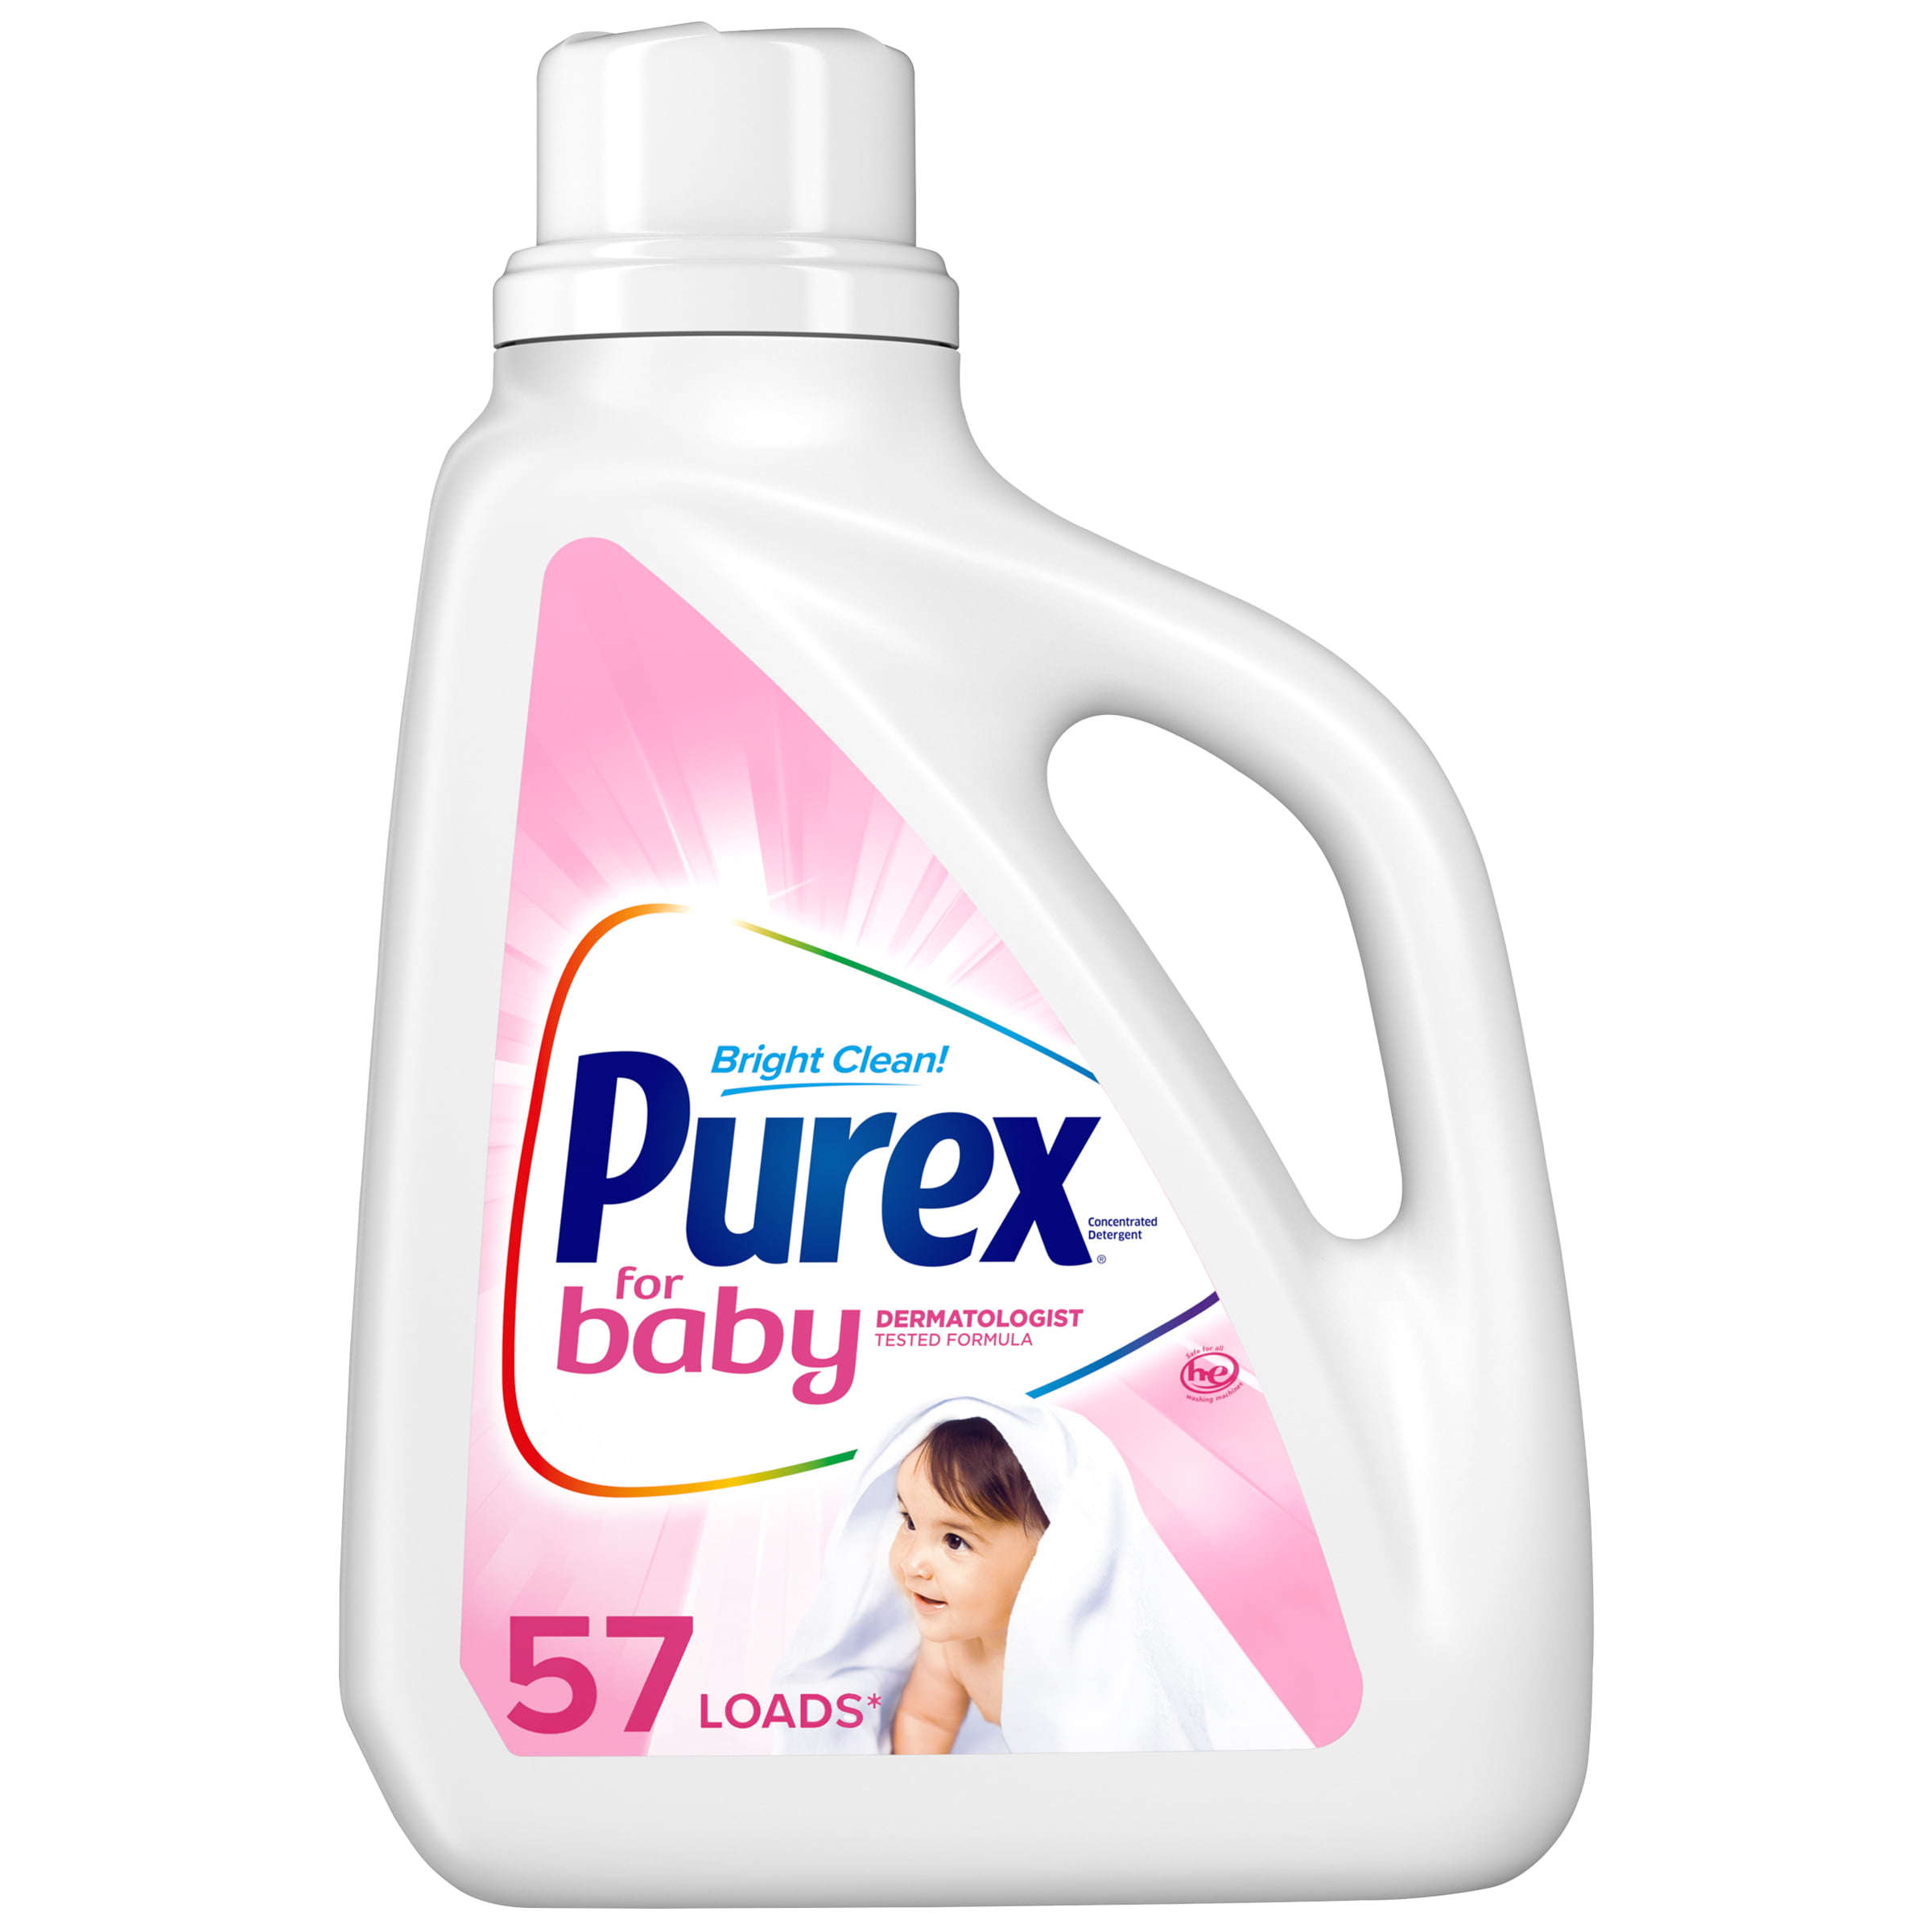 Purex Liquid Laundry Detergent for Baby, 75 Fluid Ounces, 57 Loads